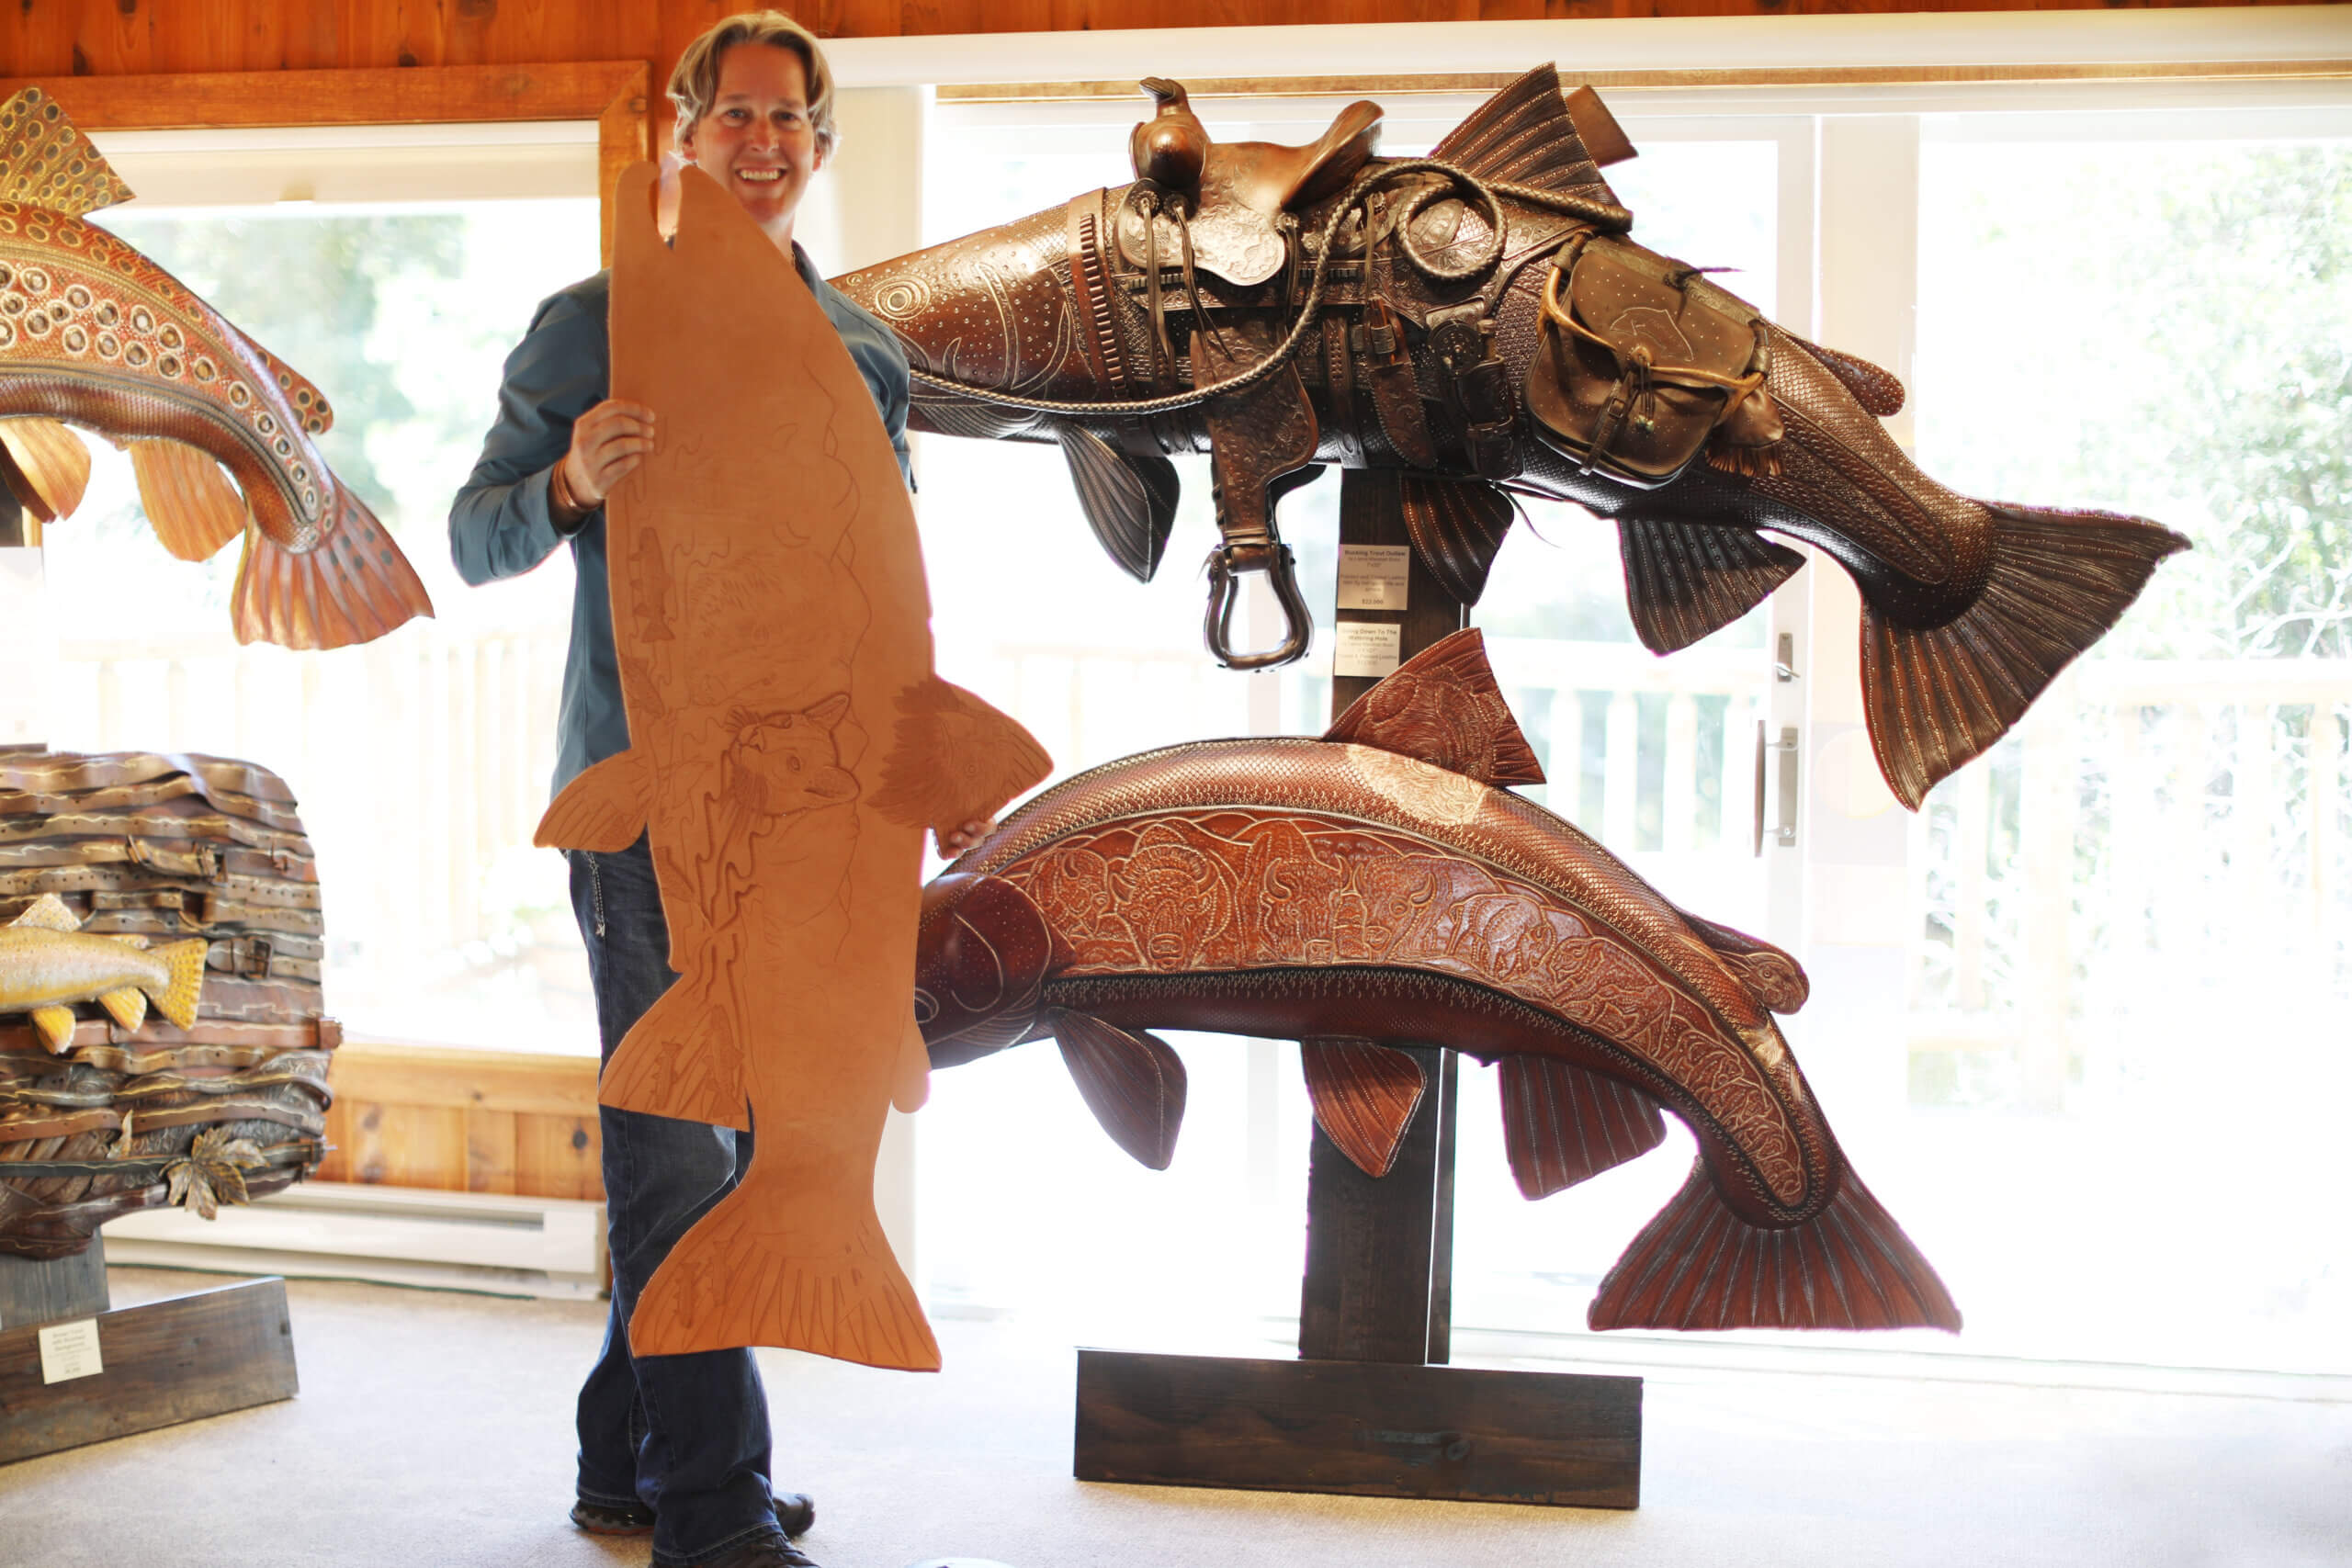 Lance Boen Leather Artist in Residence